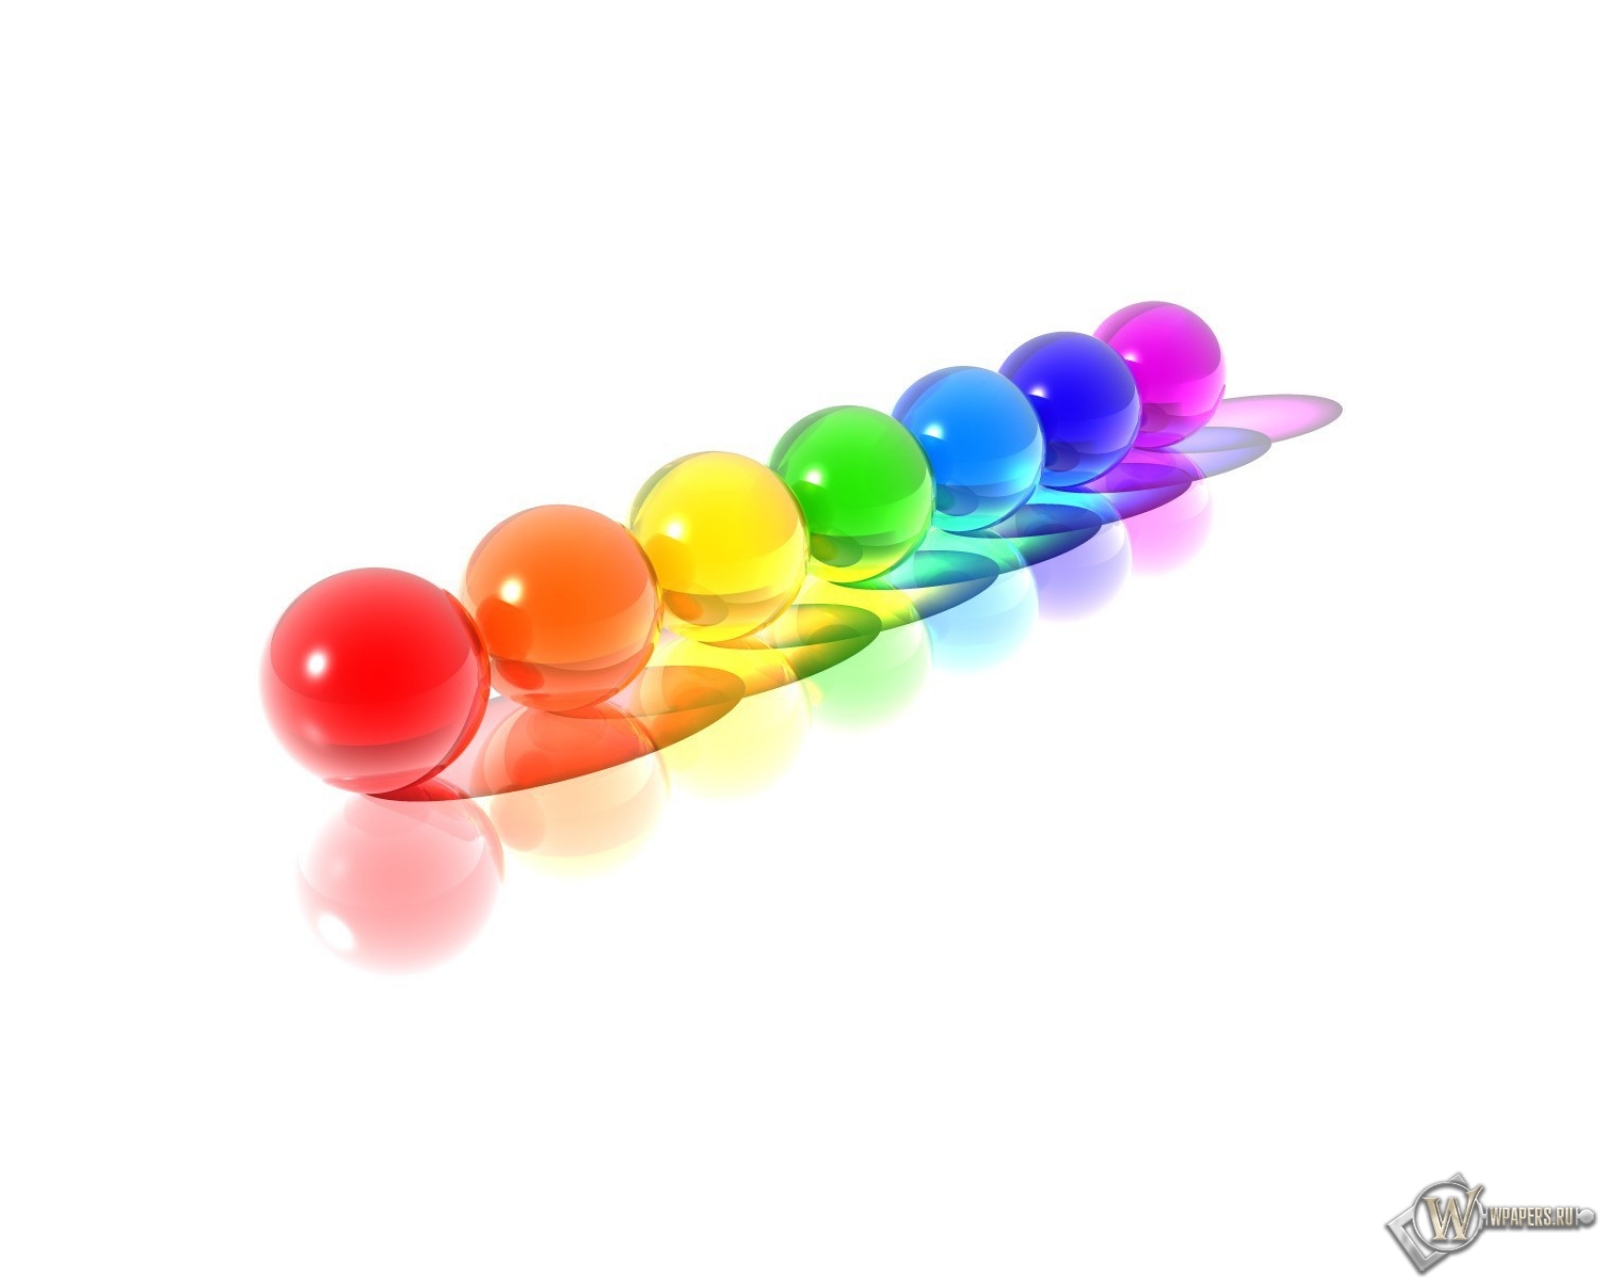 Разноцветные шарики 1600x1280